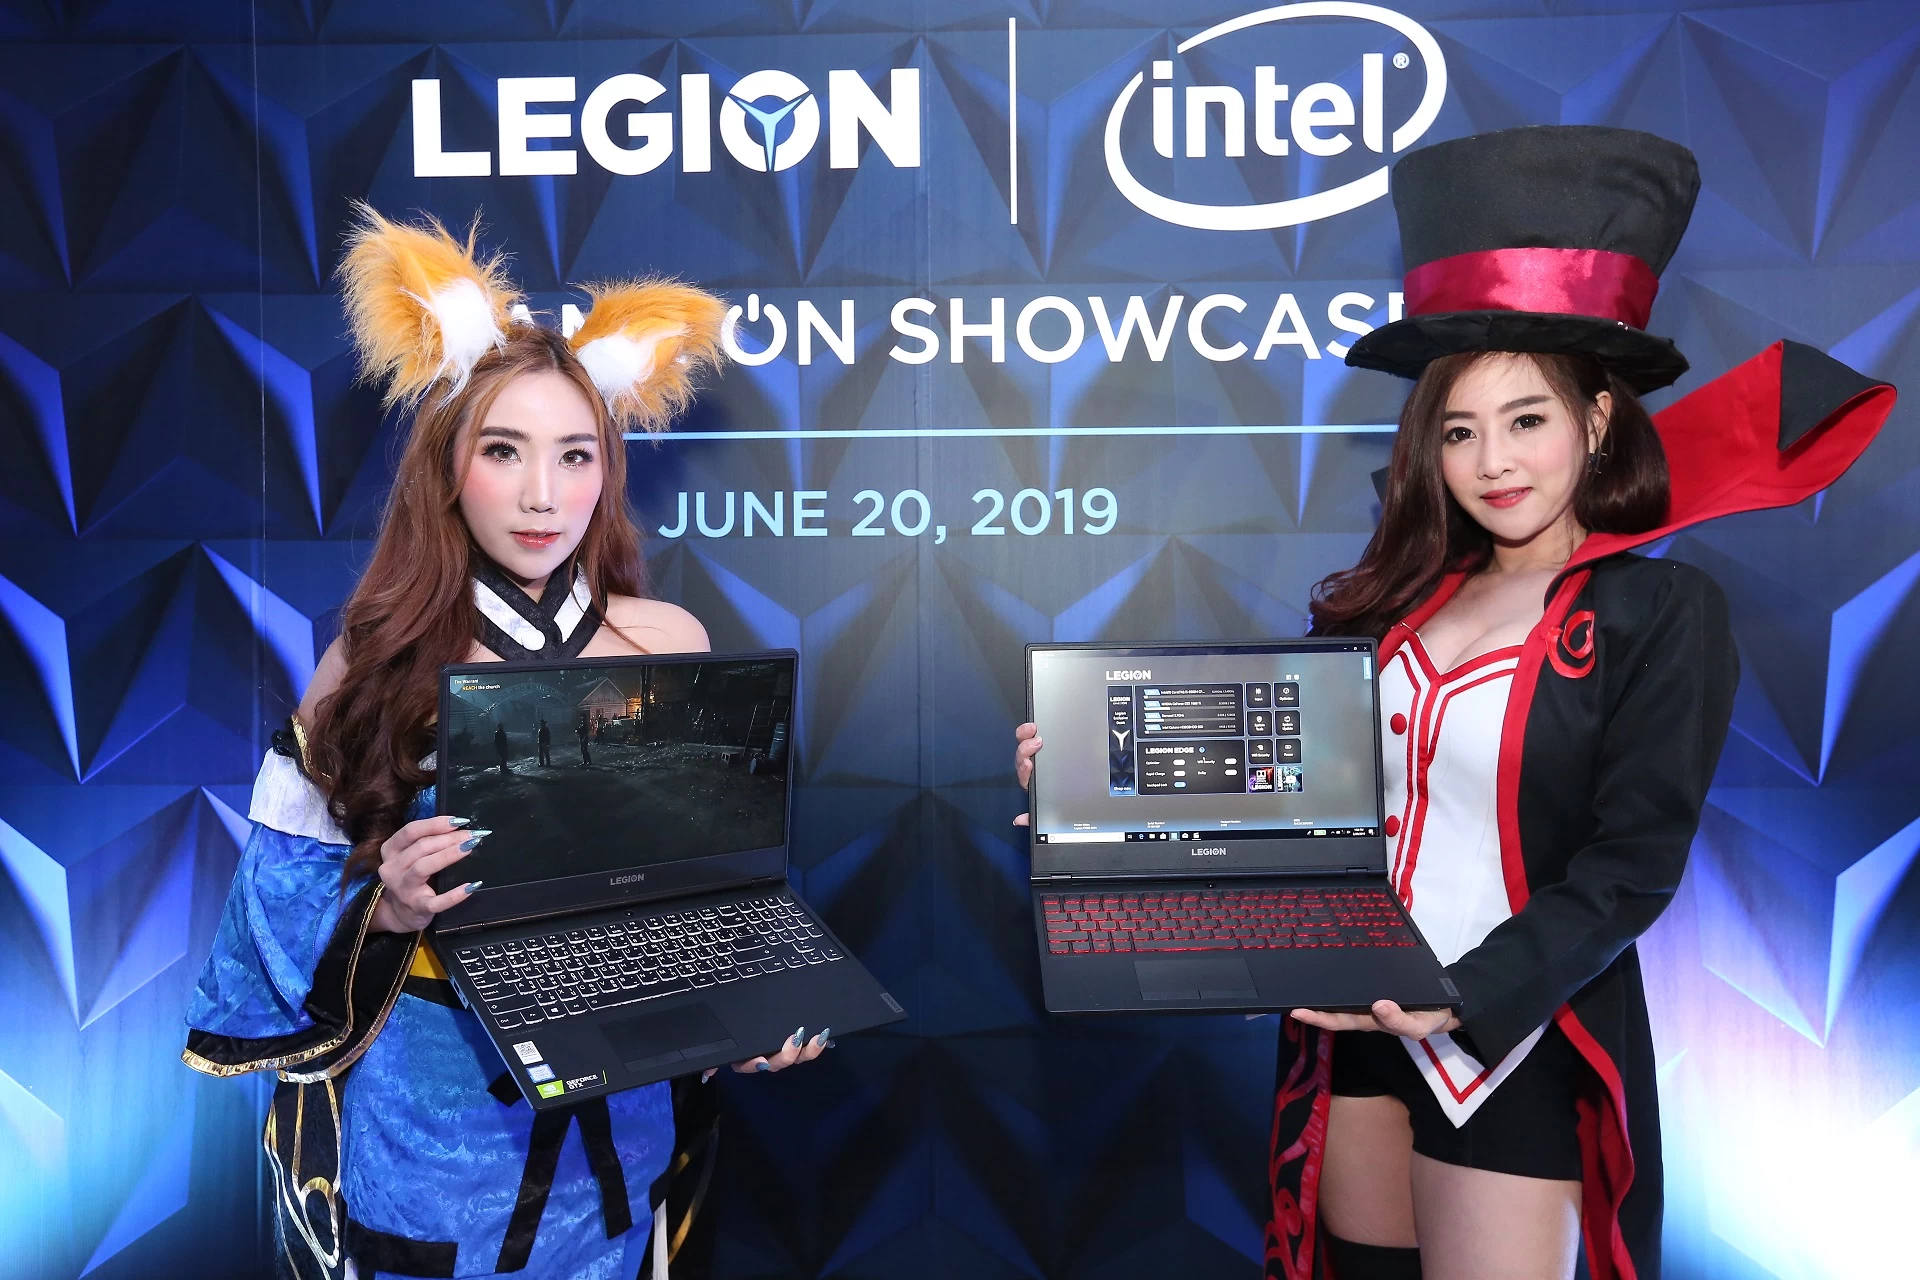 Lenovo Game On June 20 2019 2 | Lenovo Legion | Lenovo ประกาศวางขาย 5 ผลิตภัณฑ์ใหม่ในตระกูล Lenovo Legion สำหรับคอเกมเมอร์โดยเฉพาะ